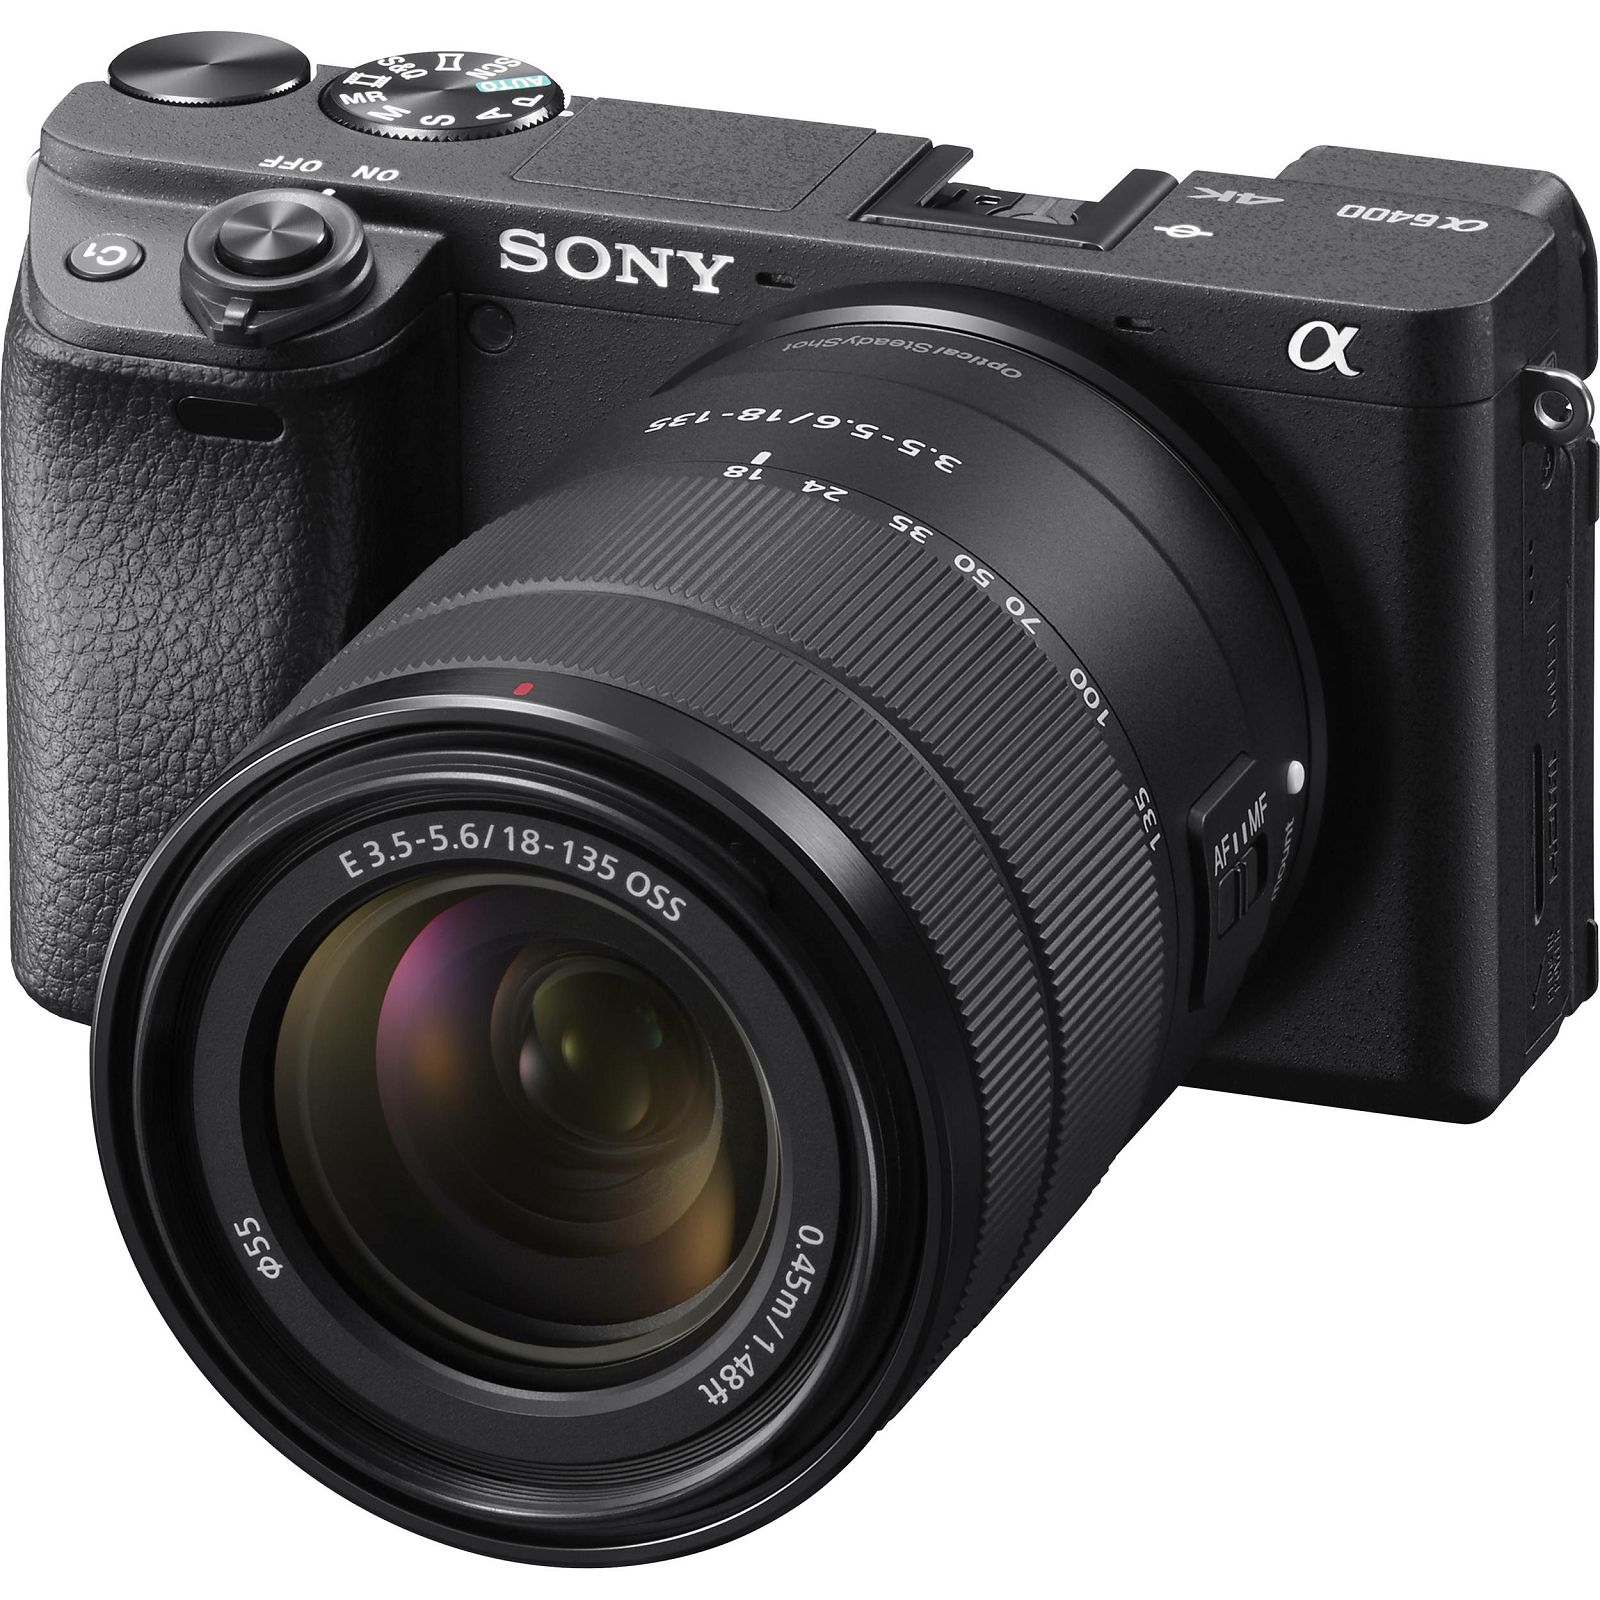 Sony Alpha a6400 + 18-135 f/3.5-5.6 OSS KIT Black Mirrorless Digital Camera crni bezrcalni digitalni fotoaparat i zoom objektiv SEL18135 18-135mm F3.5-5.6 ILCE-6400MB ILCE6400MB ILCE6400MB.CEC